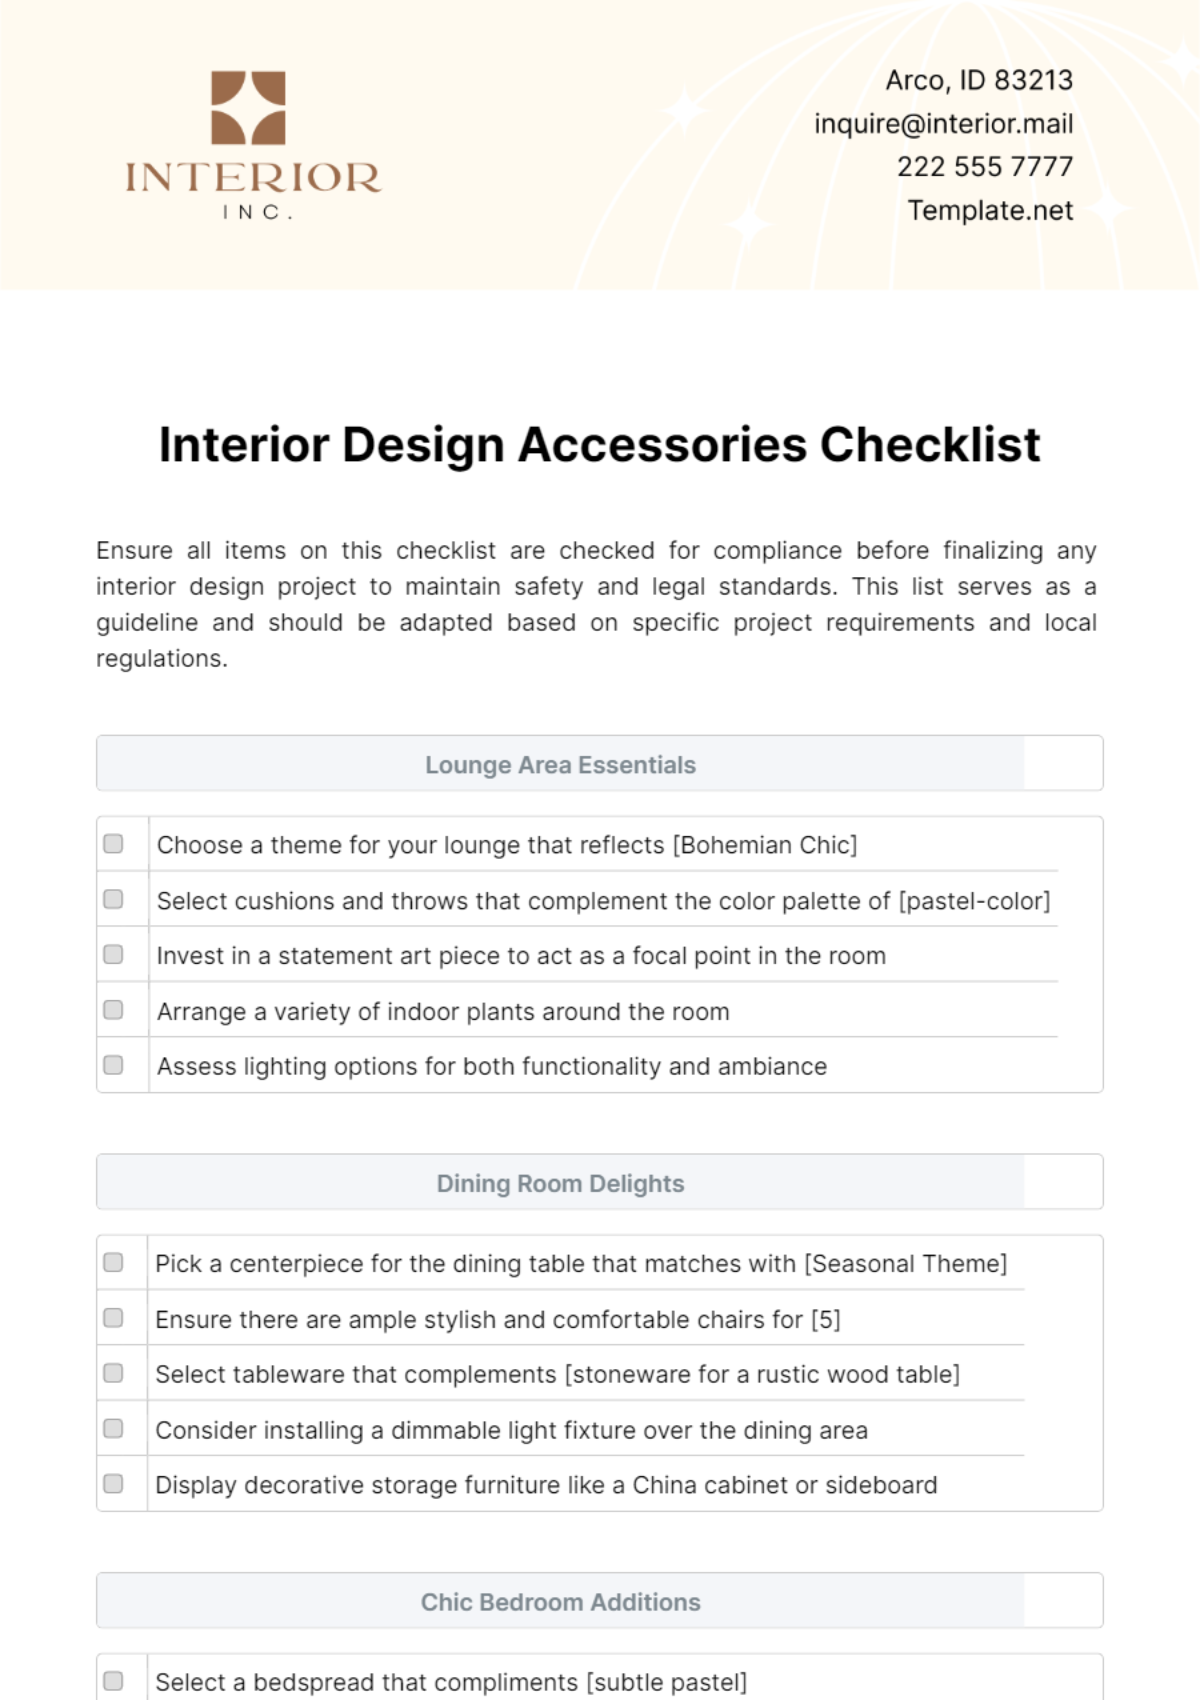 Free Interior Design Accessories Checklist Template